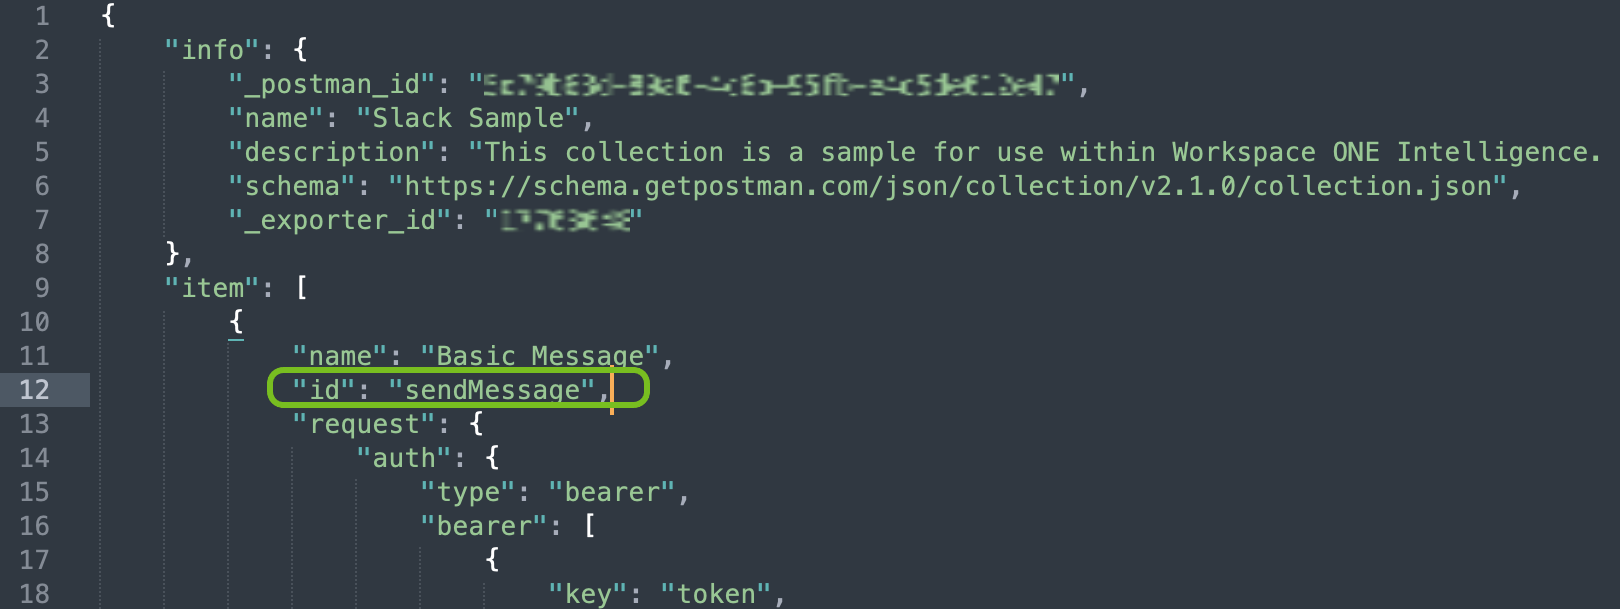 この JSON ファイルには、一意の ID を持つ新しい行が追加され、アクション名の直後に ID が追加されます。